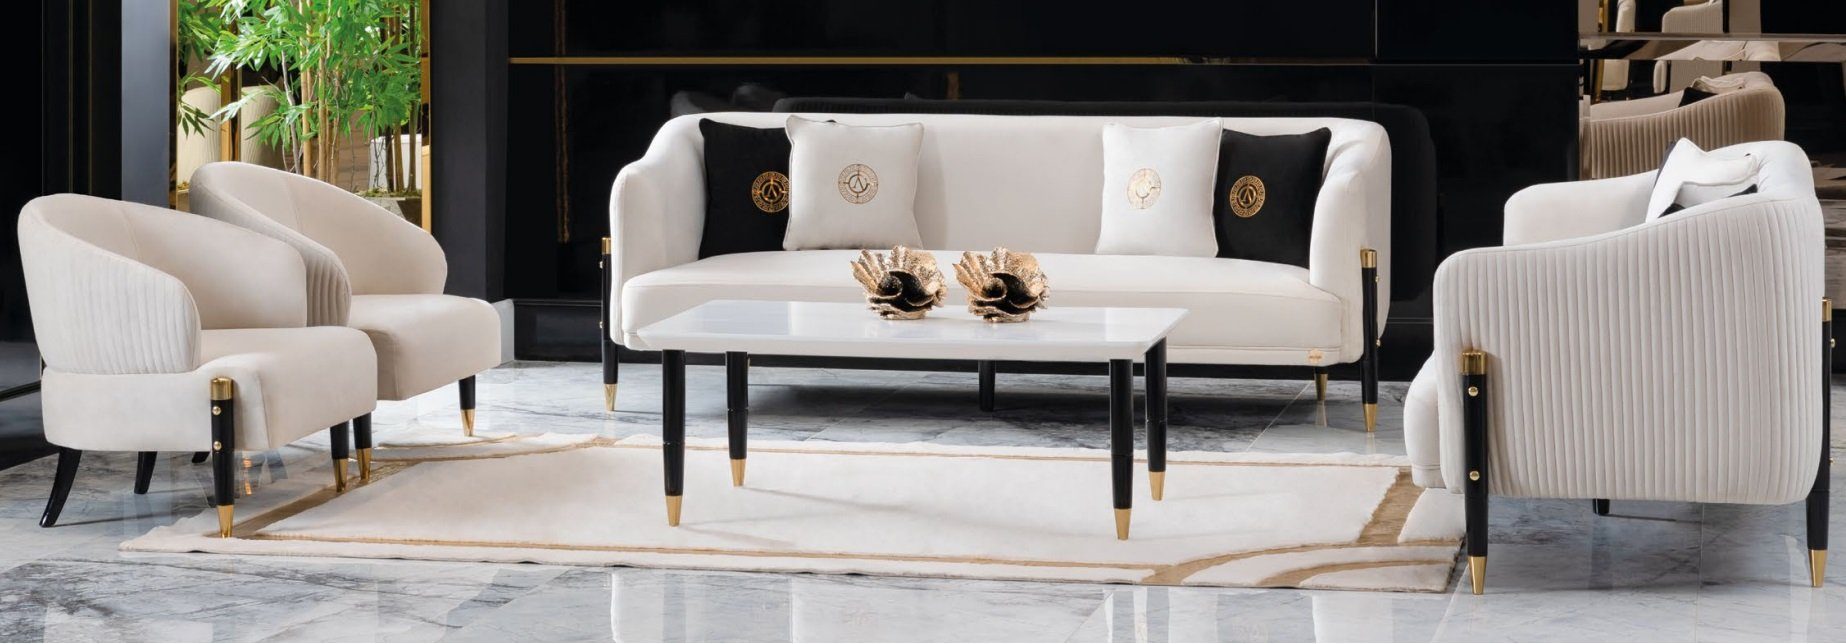 JVmoebel Sofa Weiße Sofagarnitur Design Sofas Couch Samt Polster Sitz 3+3+1+1, Made in Europe | Alle Sofas